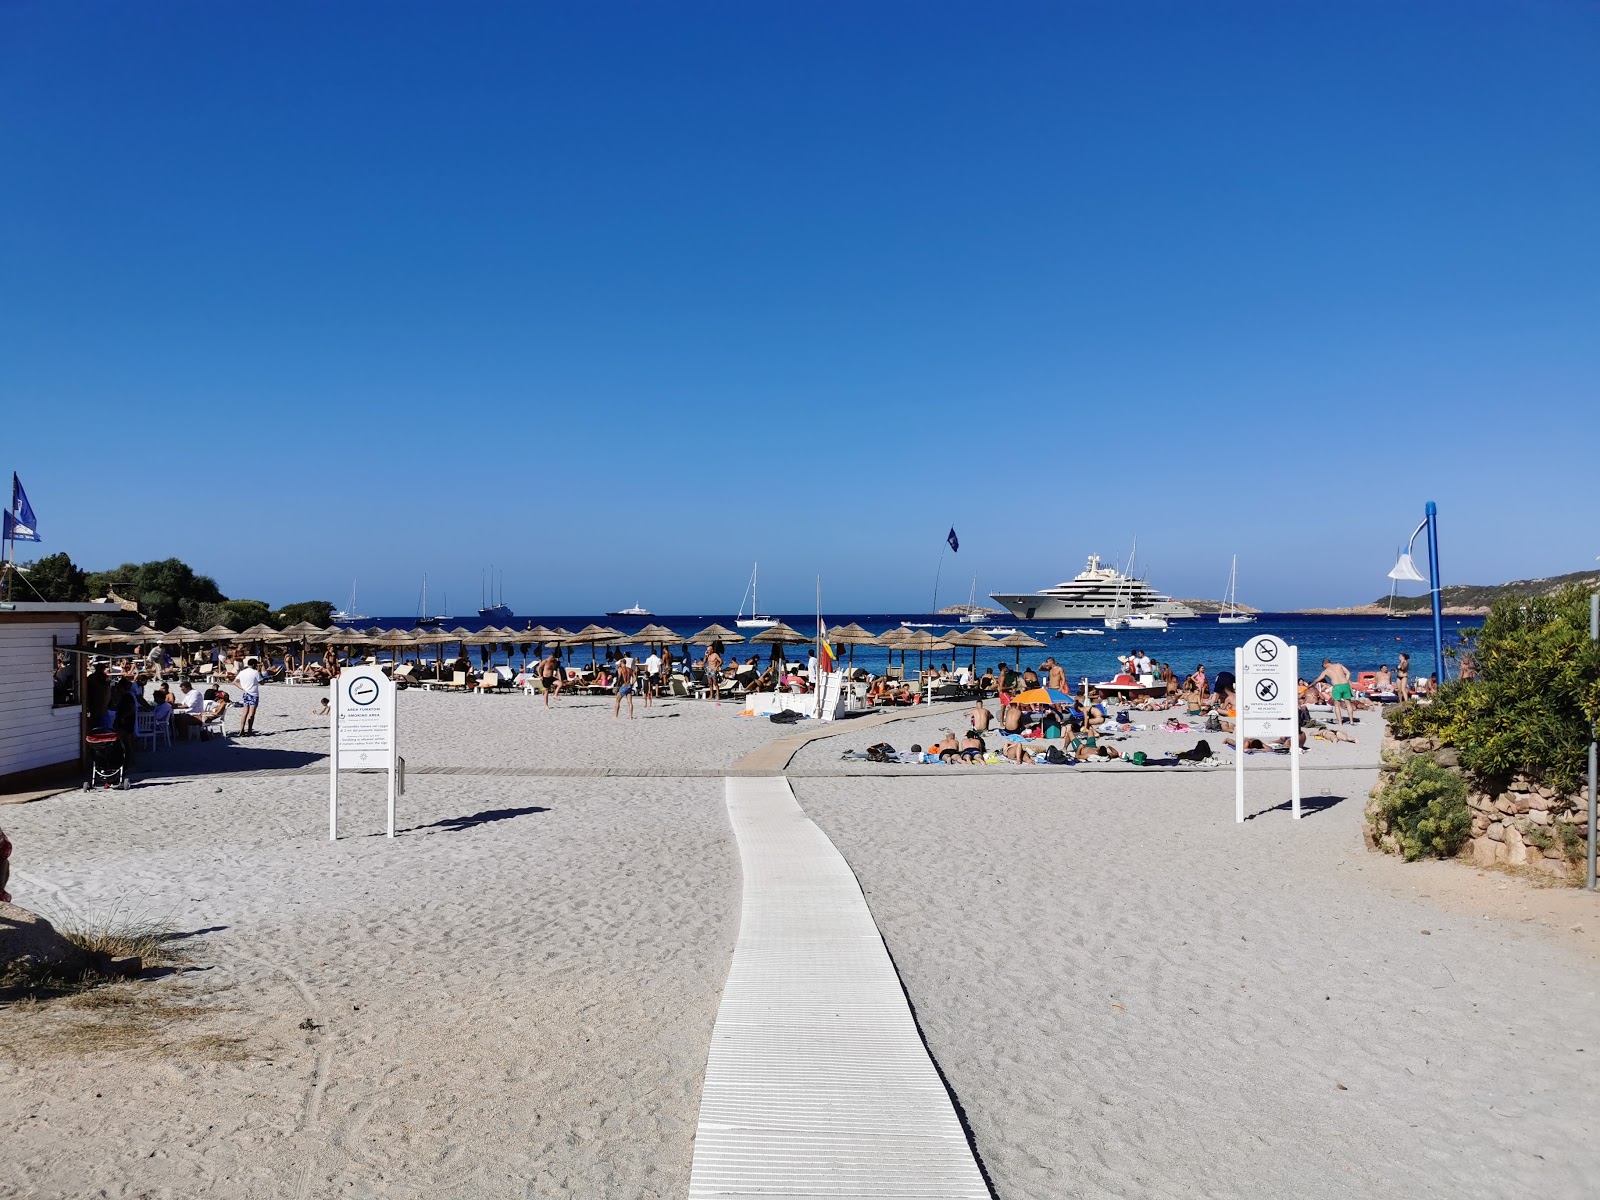 Foto av Spiaggia Piccolo Pevero med turkos rent vatten yta